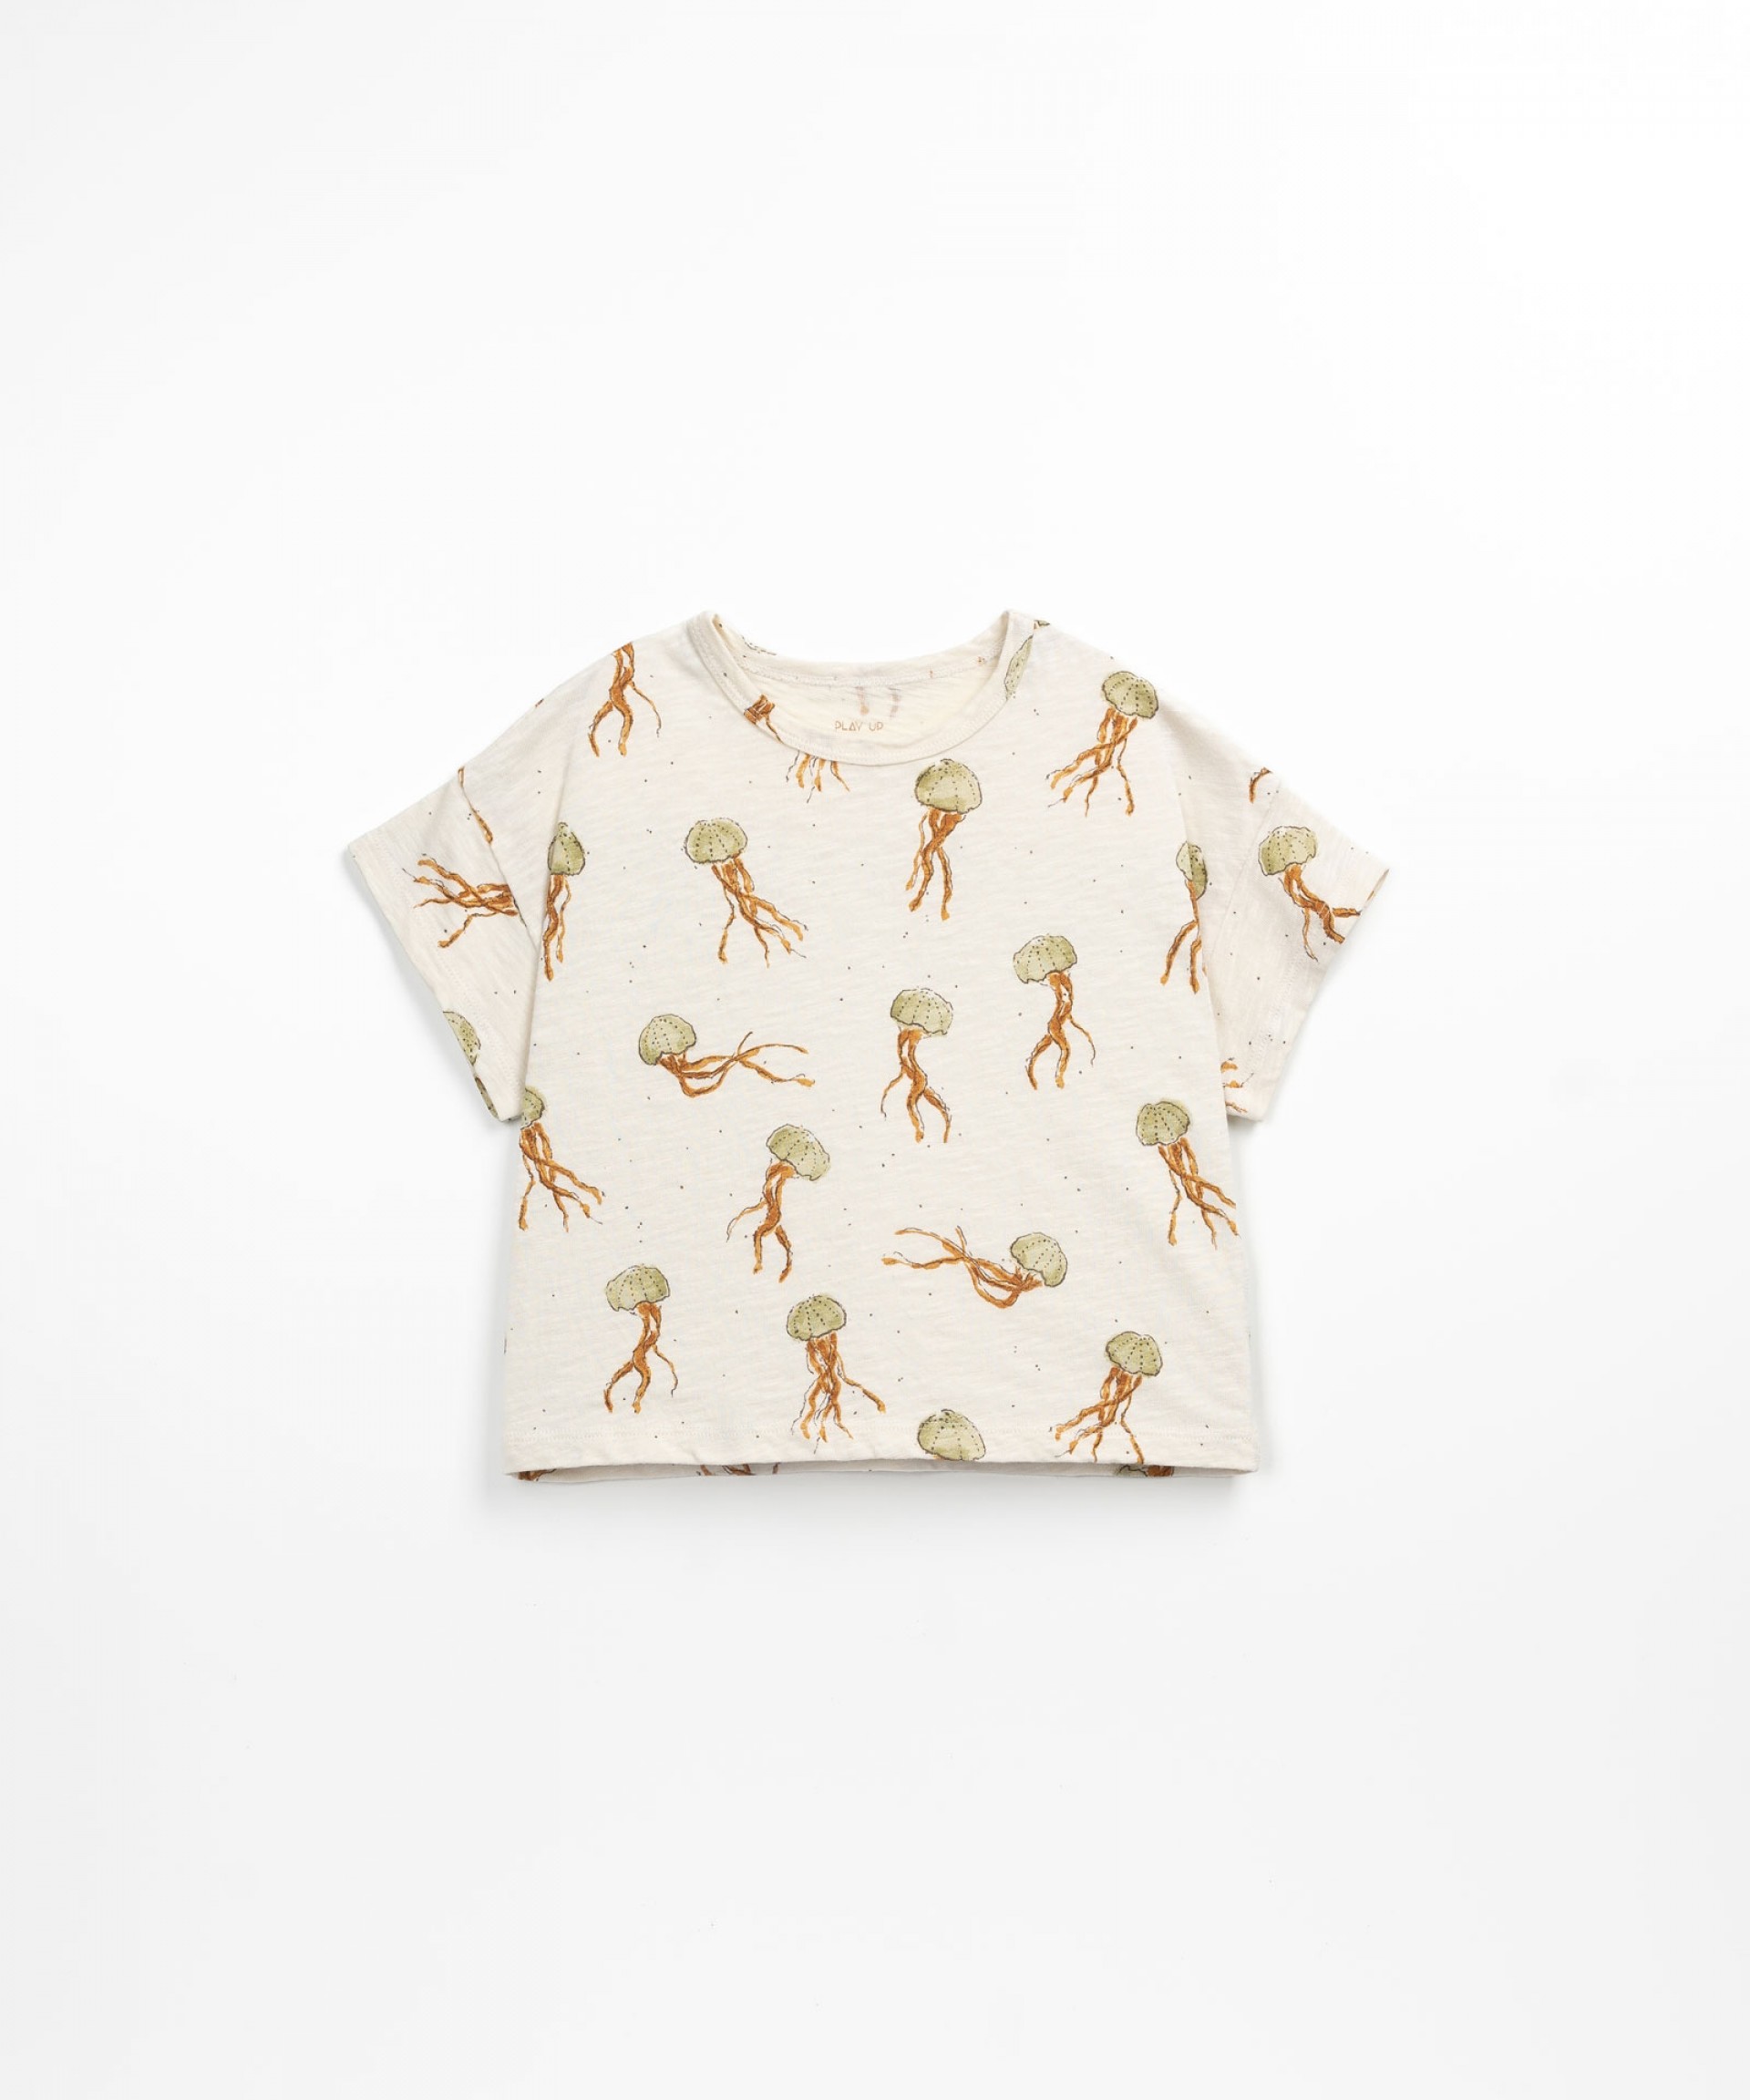 Camiseta de algodn orgnico con medusas | Textile Art